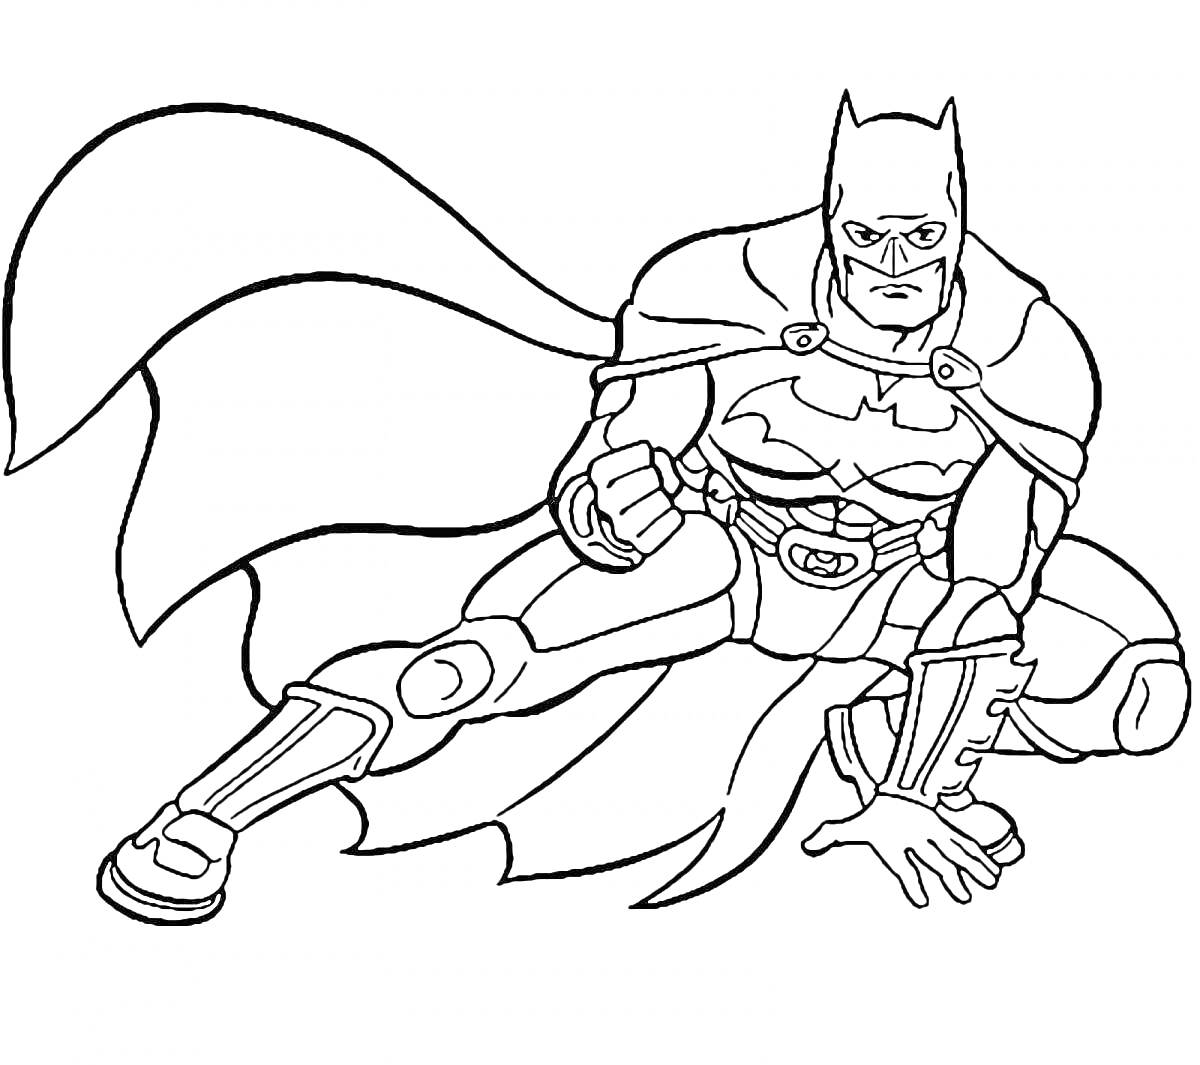 Раскраска Бэтмен в боевой позе с плащом (на земле, кулак сжат, маска и бронированный костюм с логотипом летучей мыши)